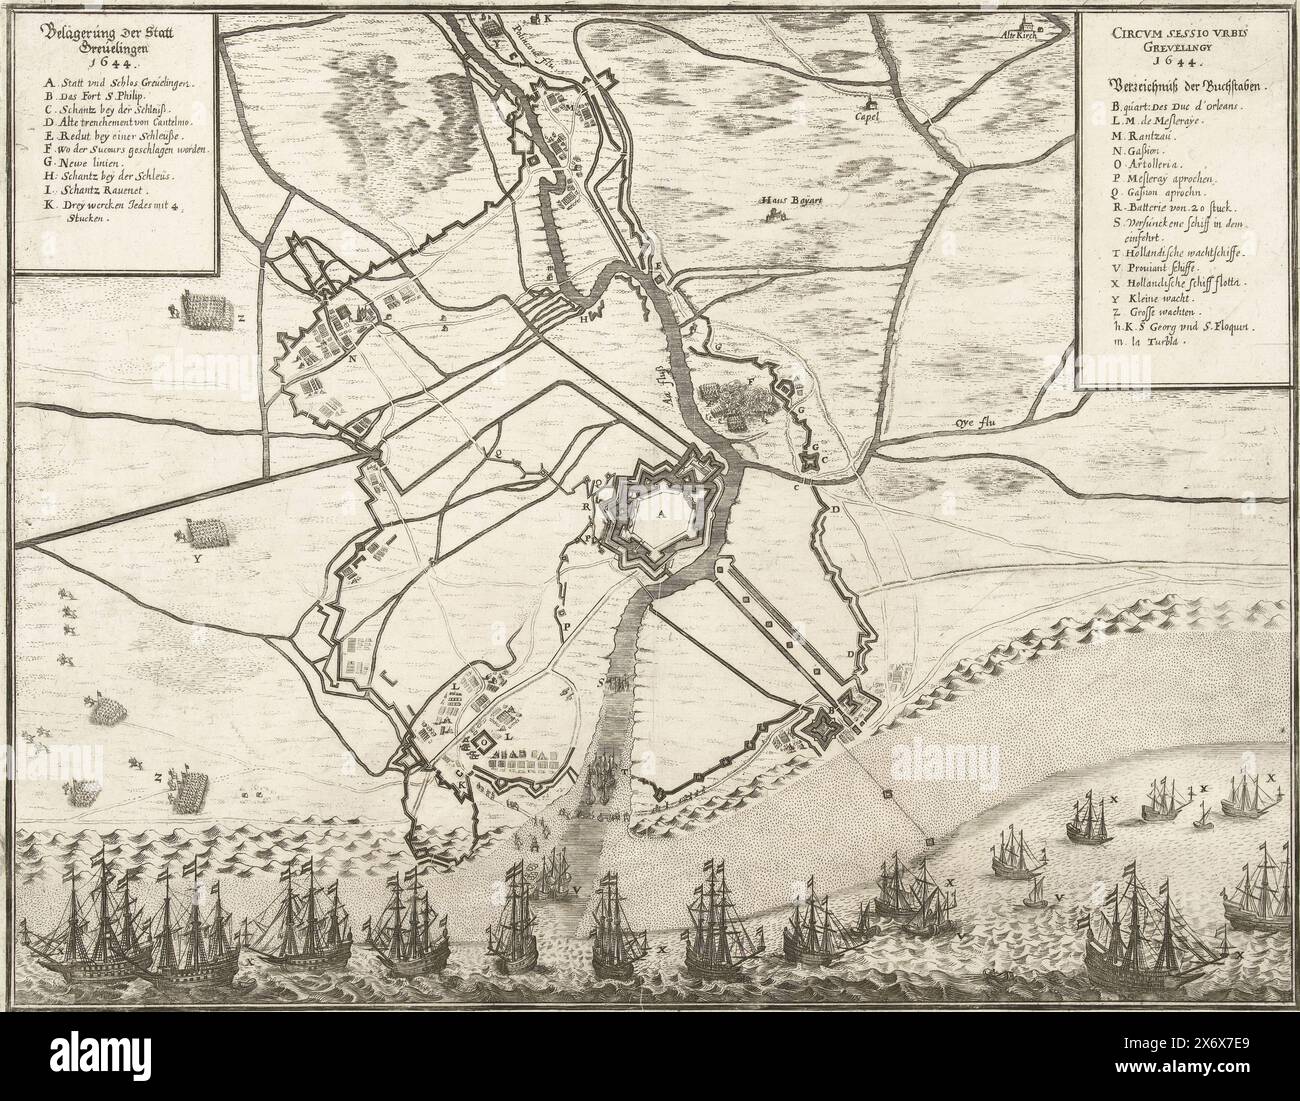 Mappa dell'assedio e della conquista di Grevelingen, 1644, Belägerung Der Statt Grevelingen 1644, Circum sessio urbis Grevelingy 1644 (titolo oggetto), Mappa dell'assedio e della conquista della città di Grevelingen da parte dell'esercito francese al comando di Gastone duca d'Orléans, luglio 28 1644. Piano della città fortificata con la terra circostante, in fondo al porto bloccato dalle navi olandesi. In alto a sinistra il titolo e la leggenda A-K in tedesco, in alto a destra il titolo in latino e la continuazione della leggenda L-Z in tedesco., stampa, stampatore: Anonimo, Germania, 1644 - 1645, carta, incisione, altezza, 300 mm x larghezza, 385 mm Foto Stock